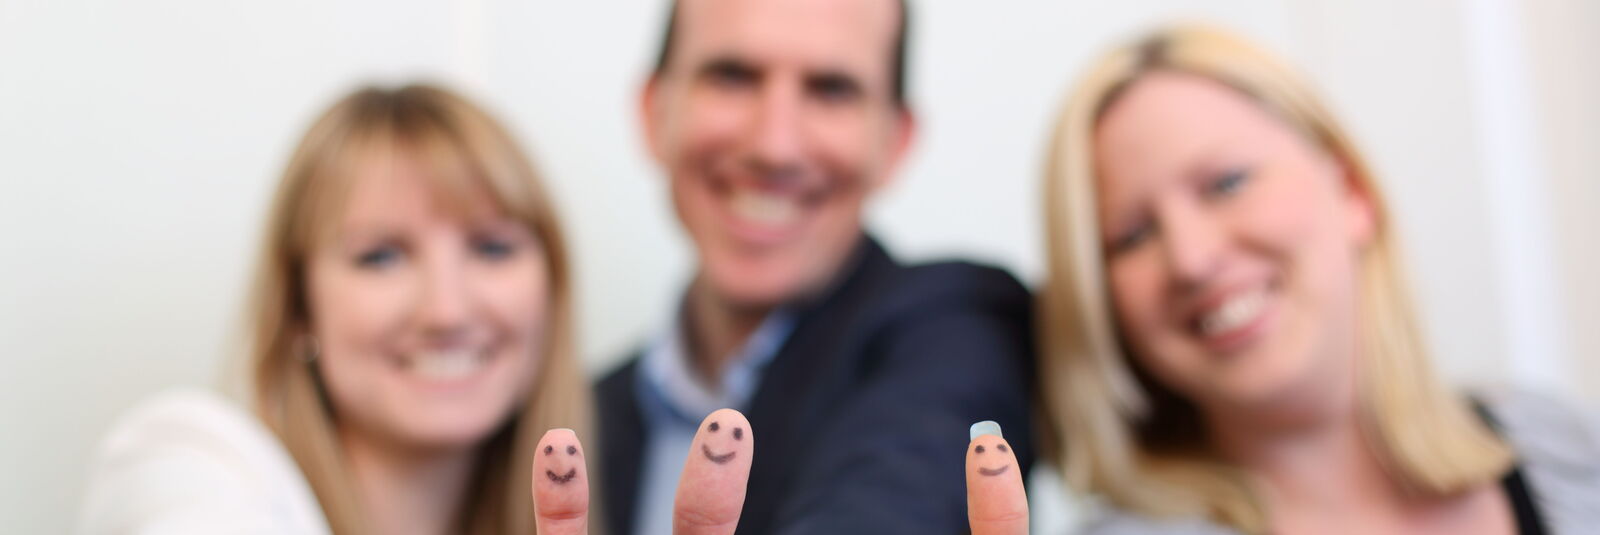 Zwei Frauen und ein Mann stehen nebeneinander und zeigen dem Betrachter jeweils die "Daumen hoch"-Geste und lächeln. Auf die Fingerkuppen ihrer Daumen ist jeweils ein Smiley gemalt. 